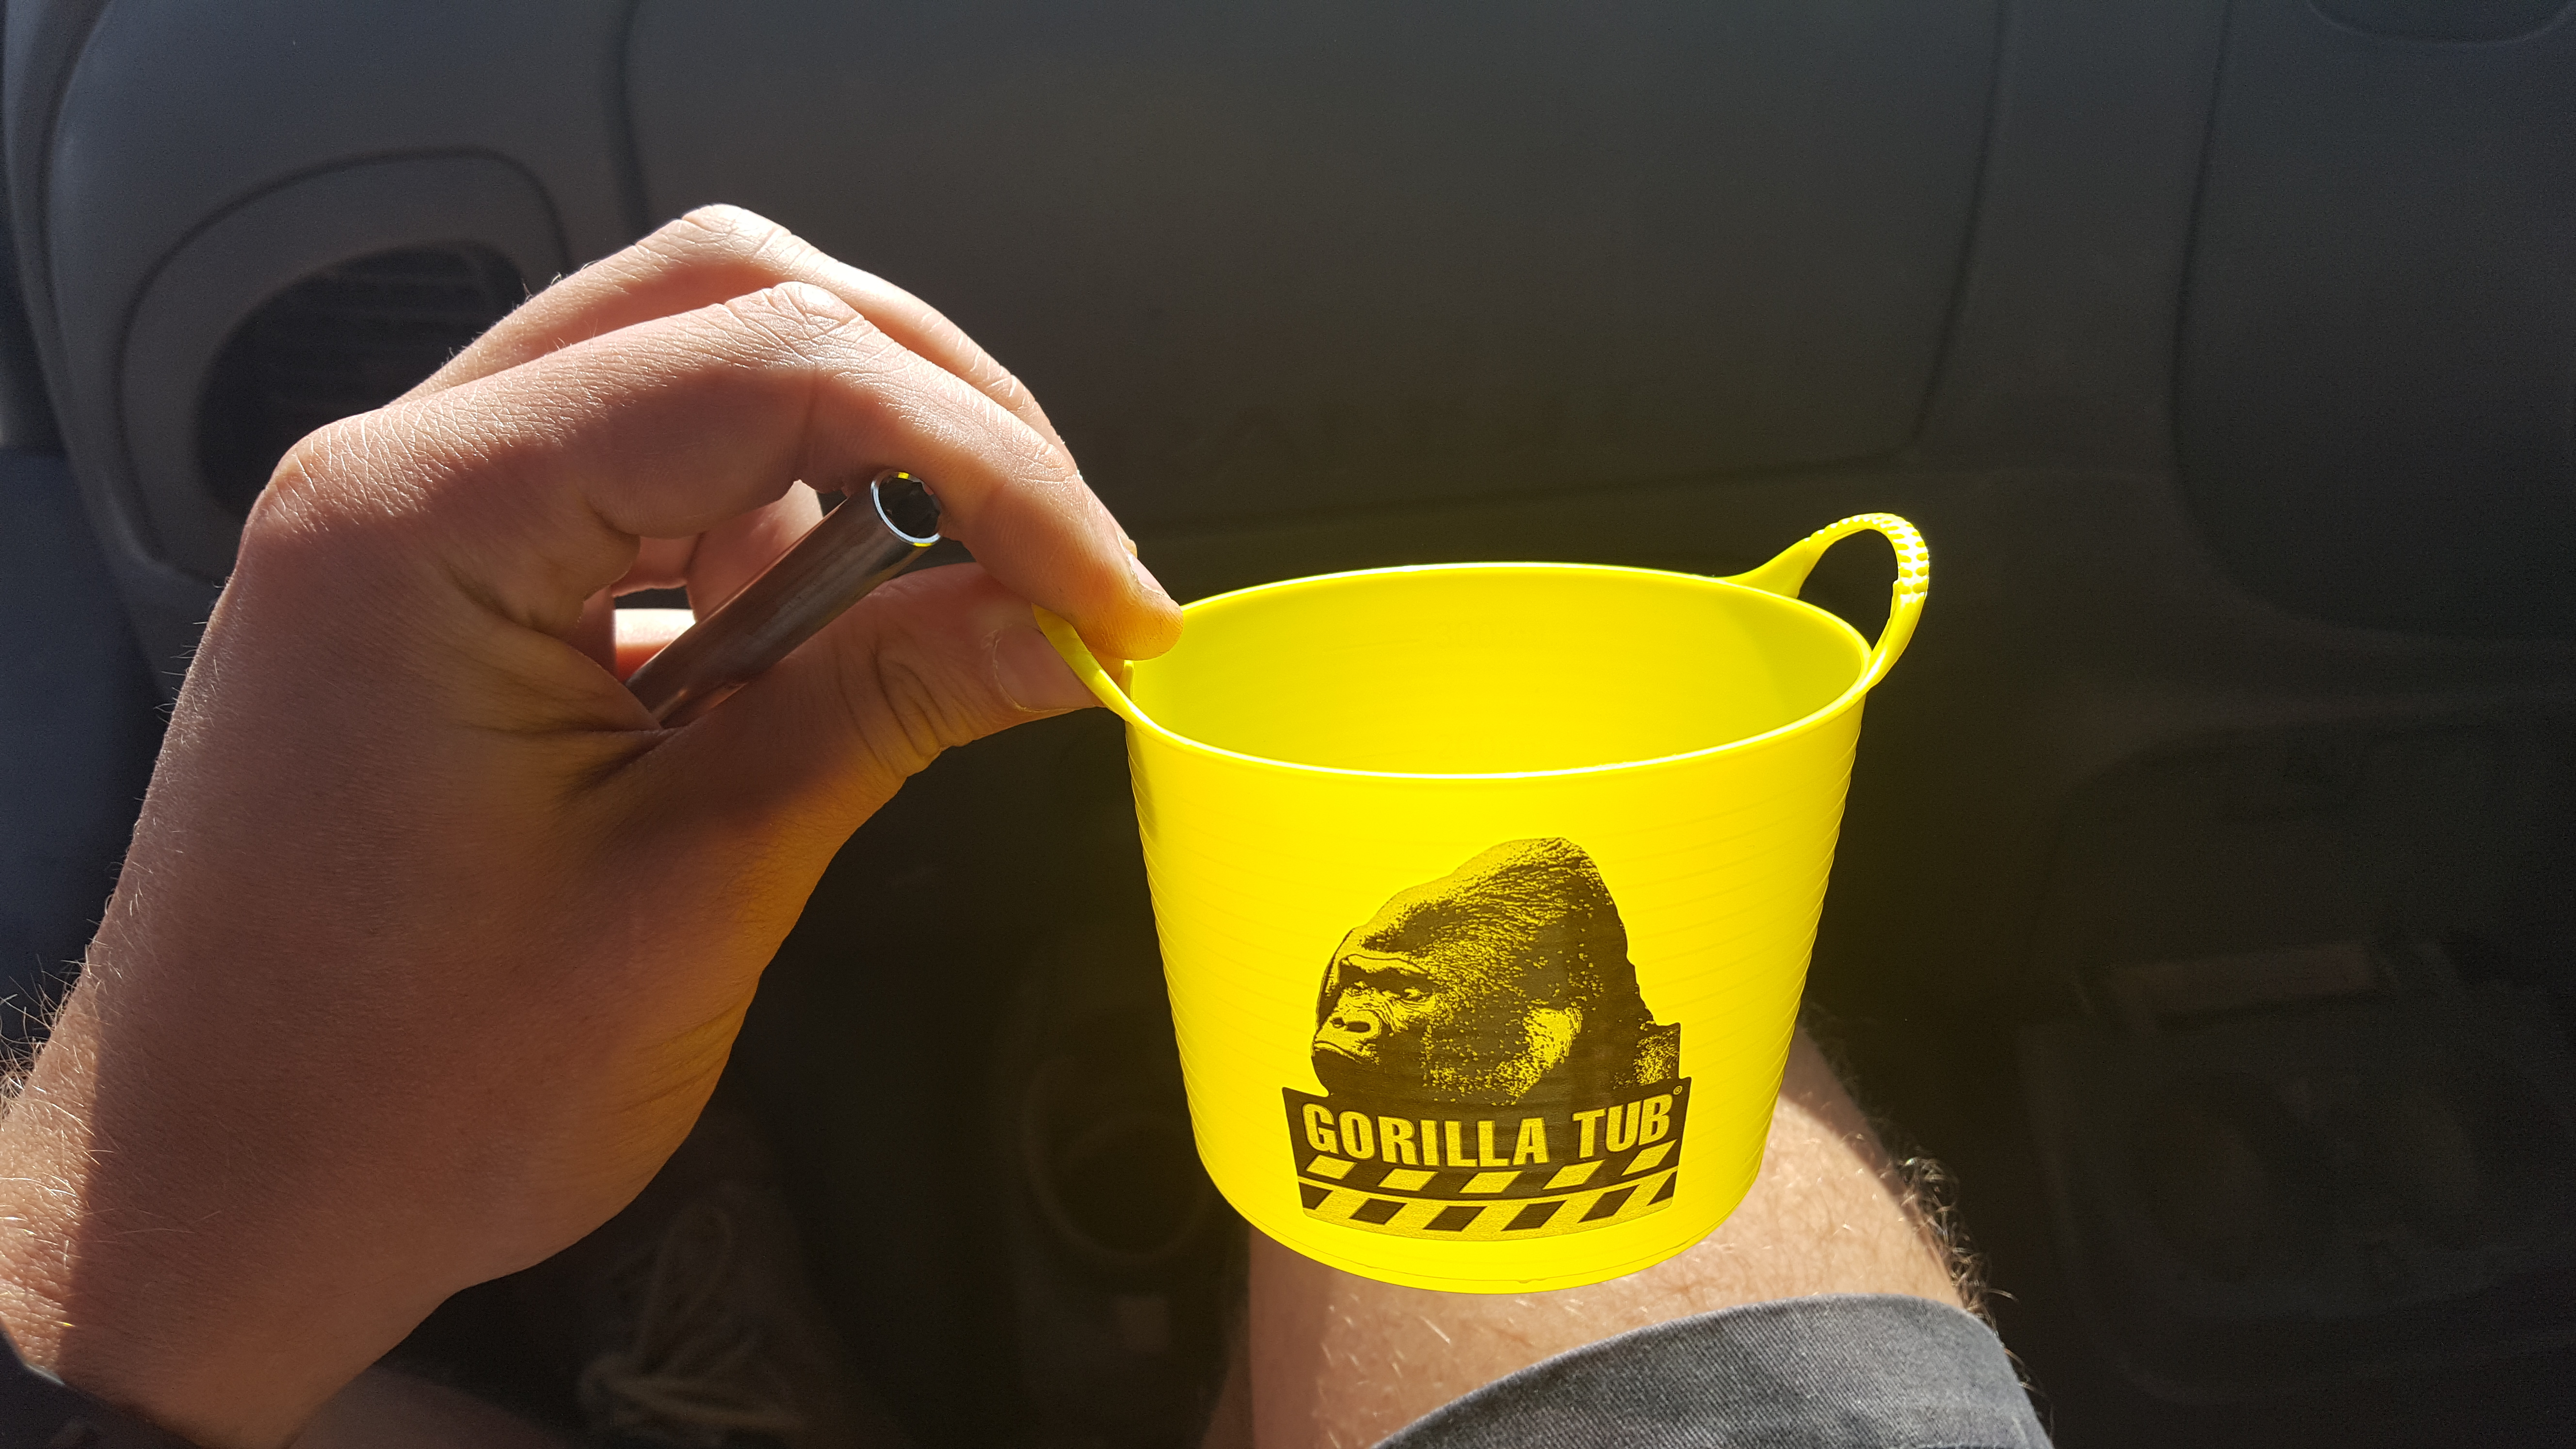 Gorilla tubs